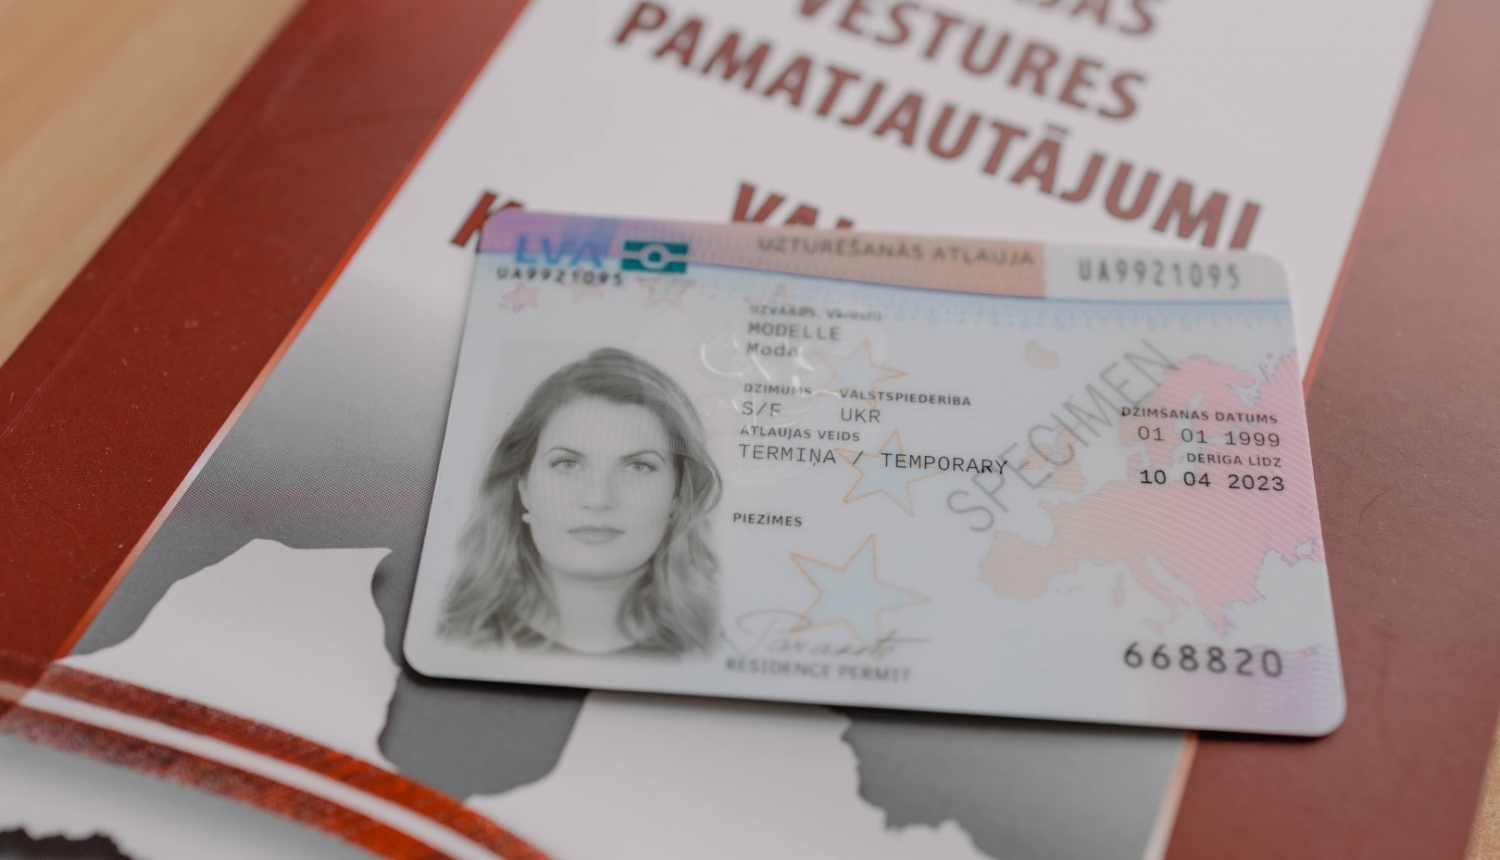 Imigrācijas likuma grozījumi paredz, ka Krievijas Federācijas pilsoņi, kuri nav nokārtojuši latviešu valodas pārbaudi attaisnojošu iemeslu dēļ, var pieteikties uzturēšanās atļaujai uz laiku līdz diviem gadiem